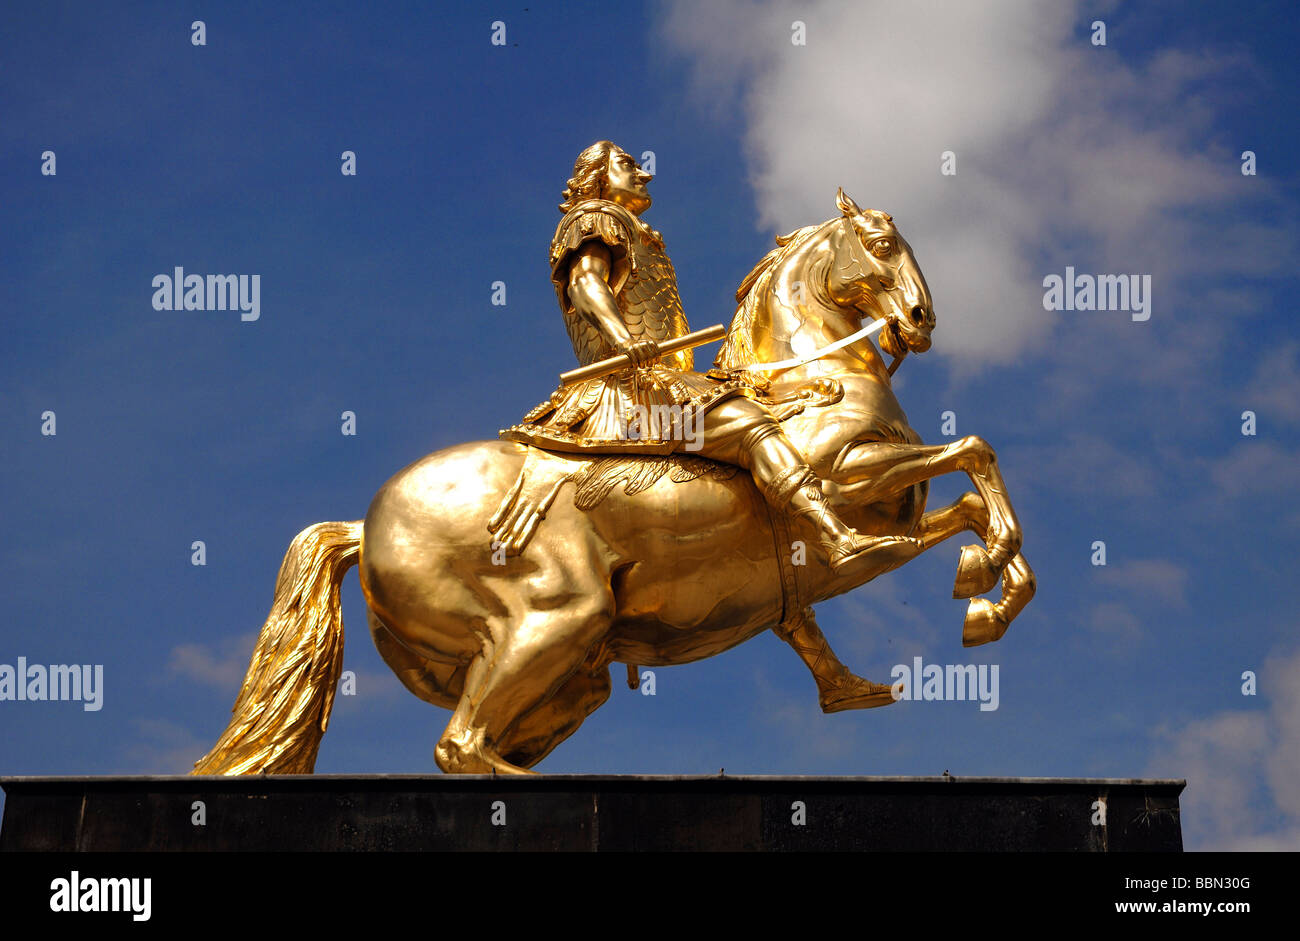 Golden statua equestre di Augusto il Forte contro il cielo blu, Dresda, Sassonia, Germania, Europa Foto Stock